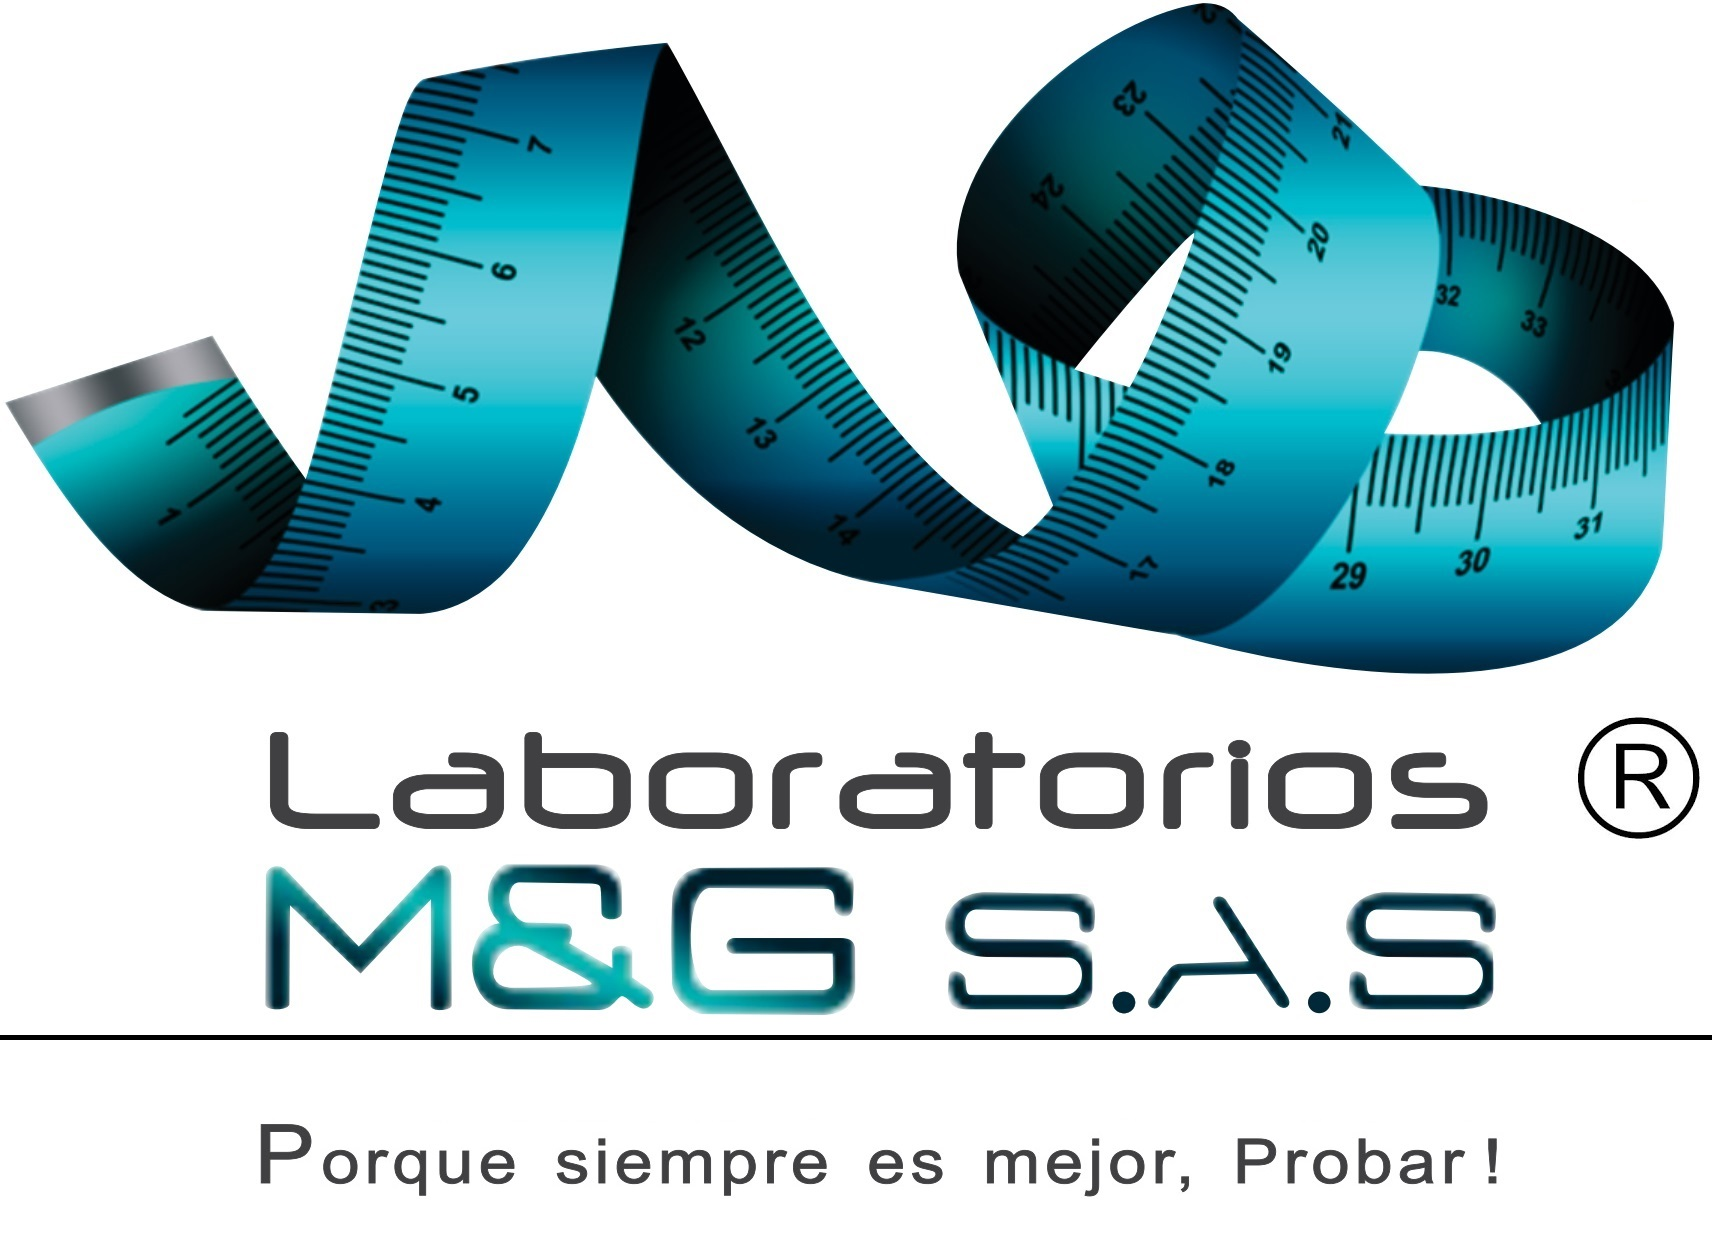 Colombia - Laboratorios M y G (MyG)